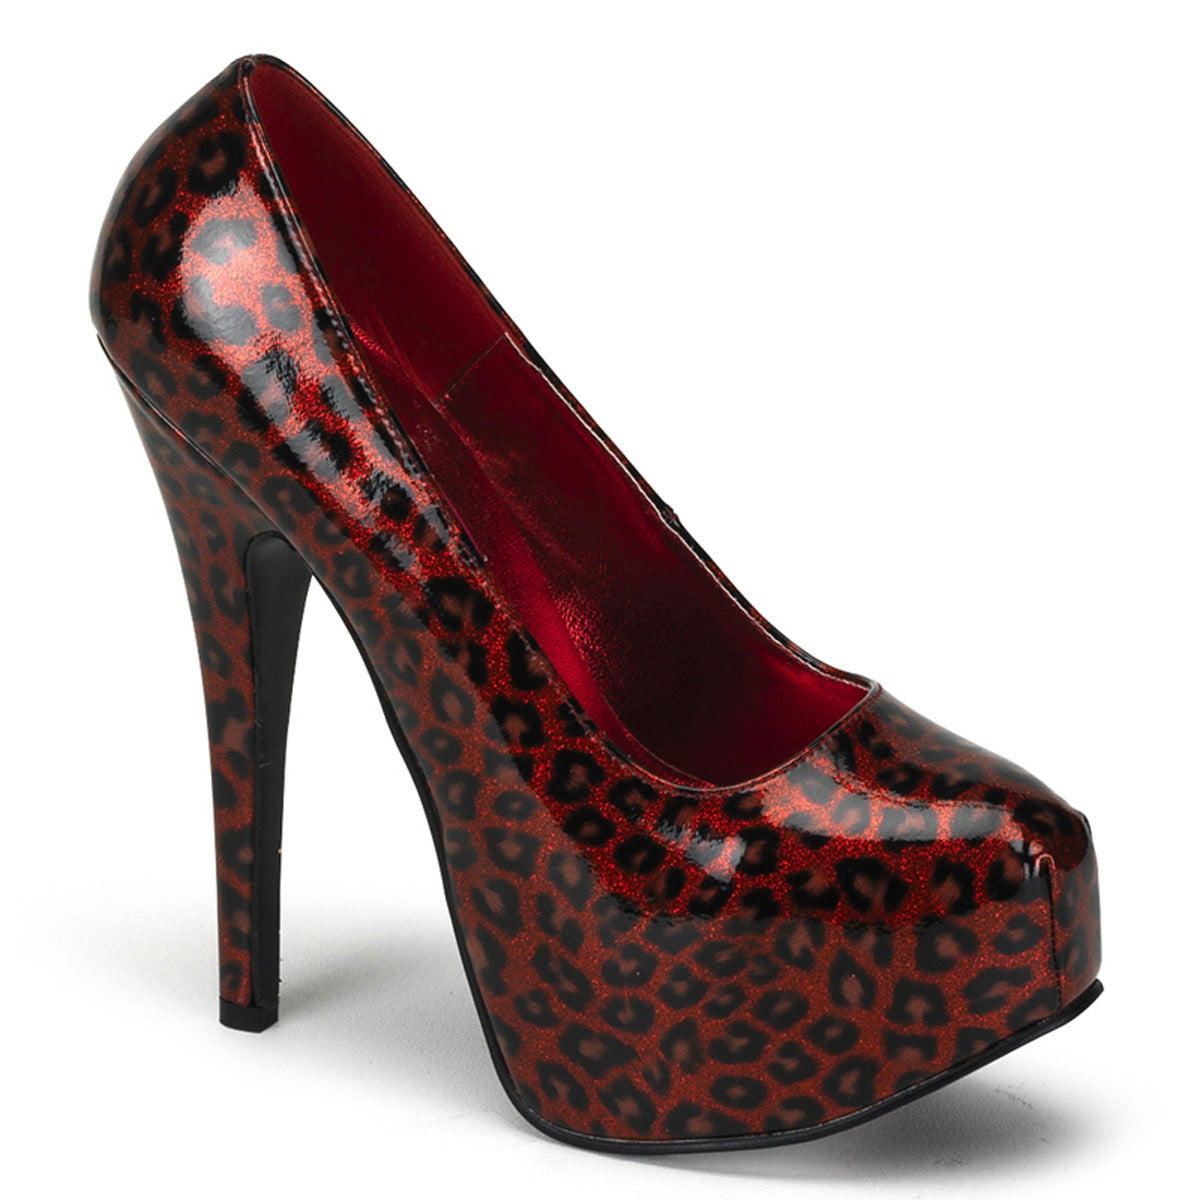 TEEZE-37 Hidden Platform High Heel Red Cheetah Sexy Shoes